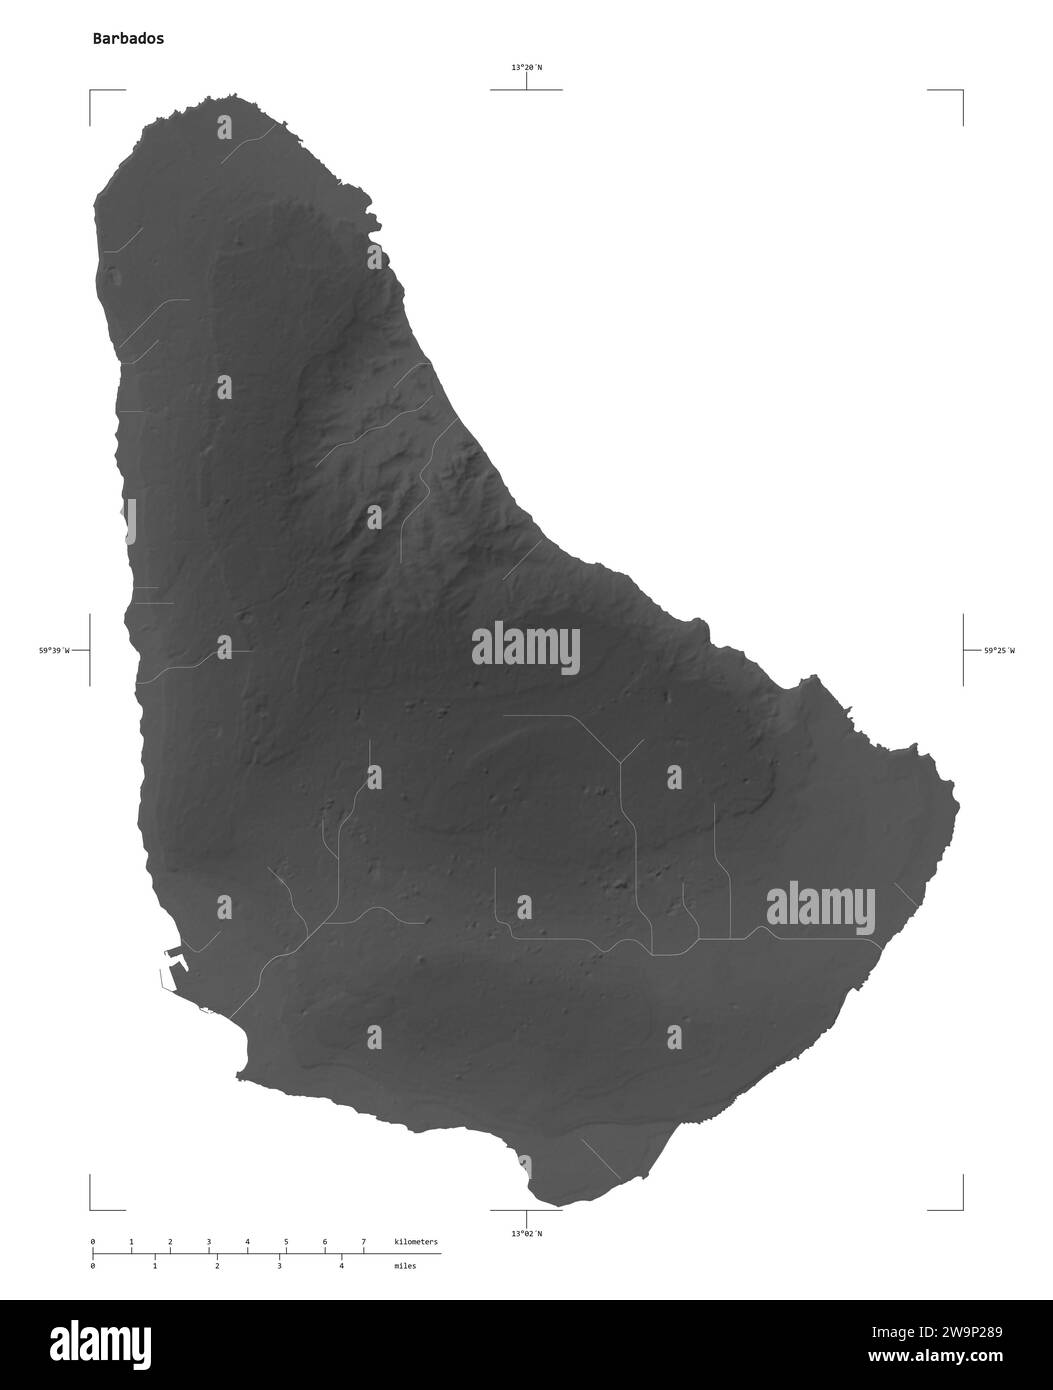 Forma di una mappa di elevazione in scala di grigi con laghi e fiumi delle Barbados, con scala di distanza e coordinate di confine della mappa, isolati su bianco Foto Stock